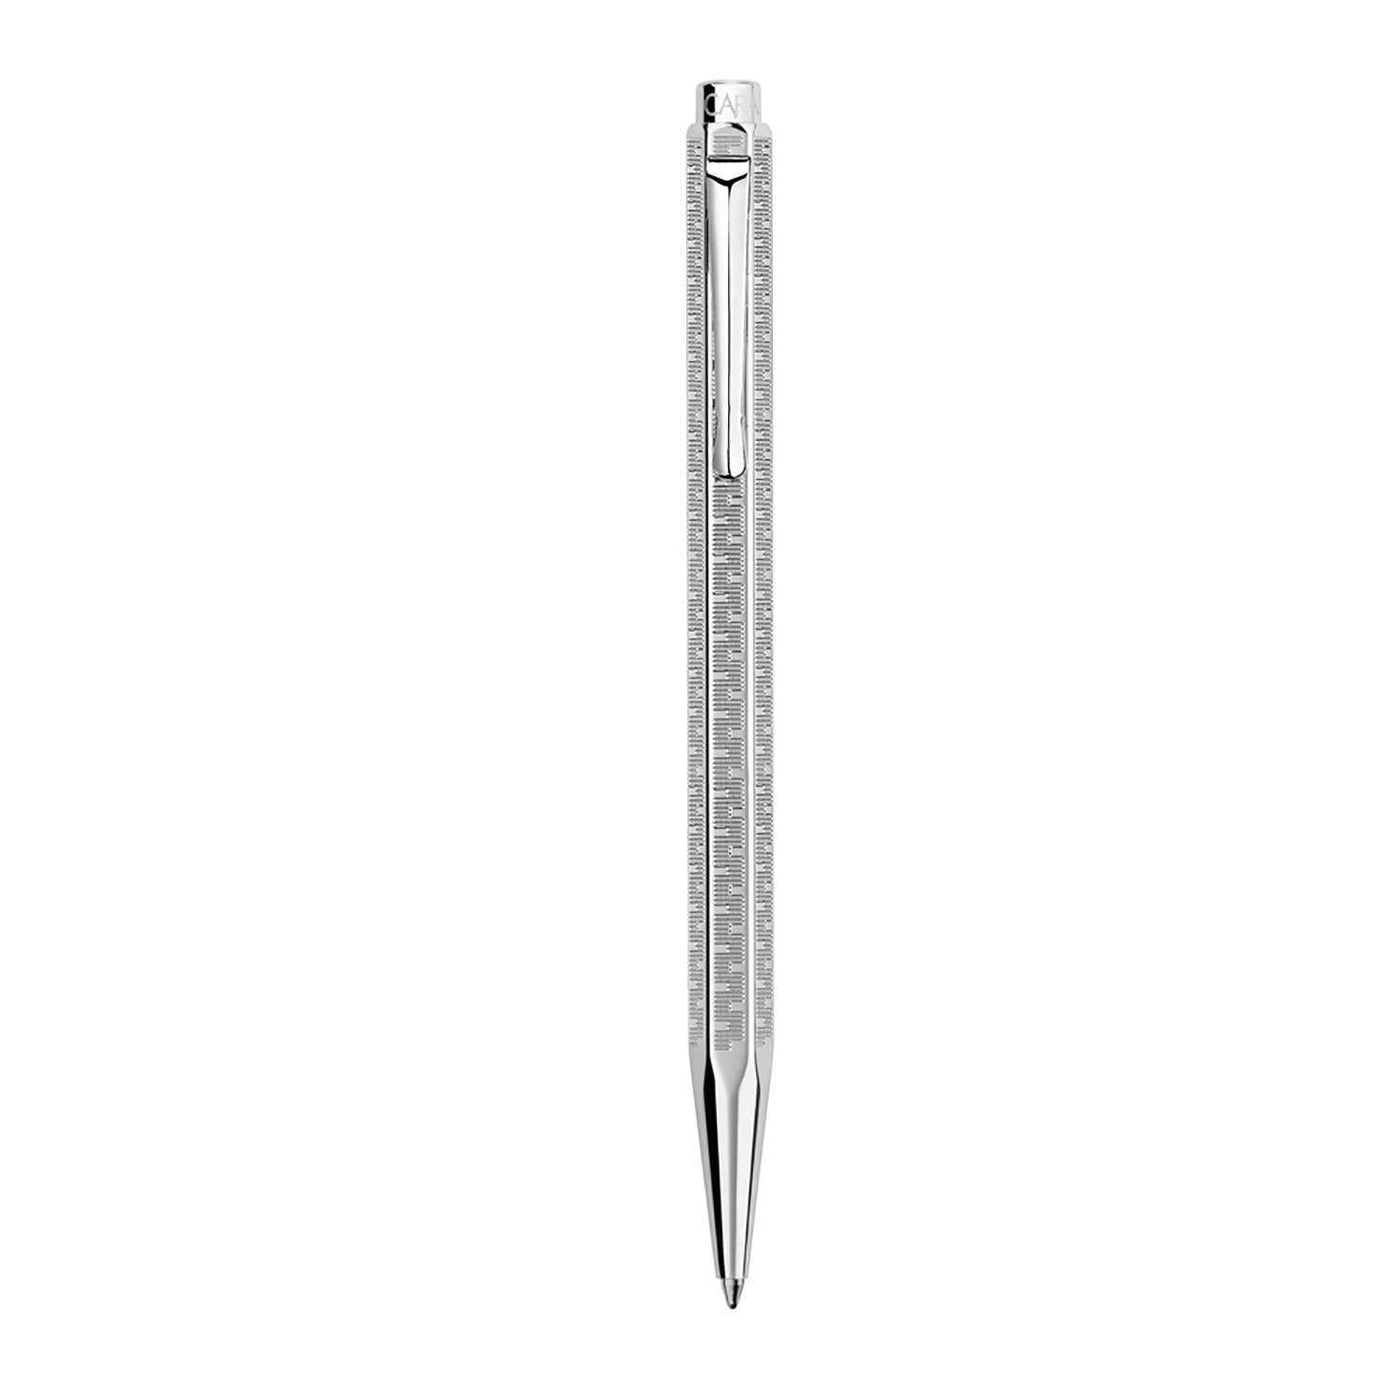 Caran D' Ache Ecridor Ball Pen Type 55 5